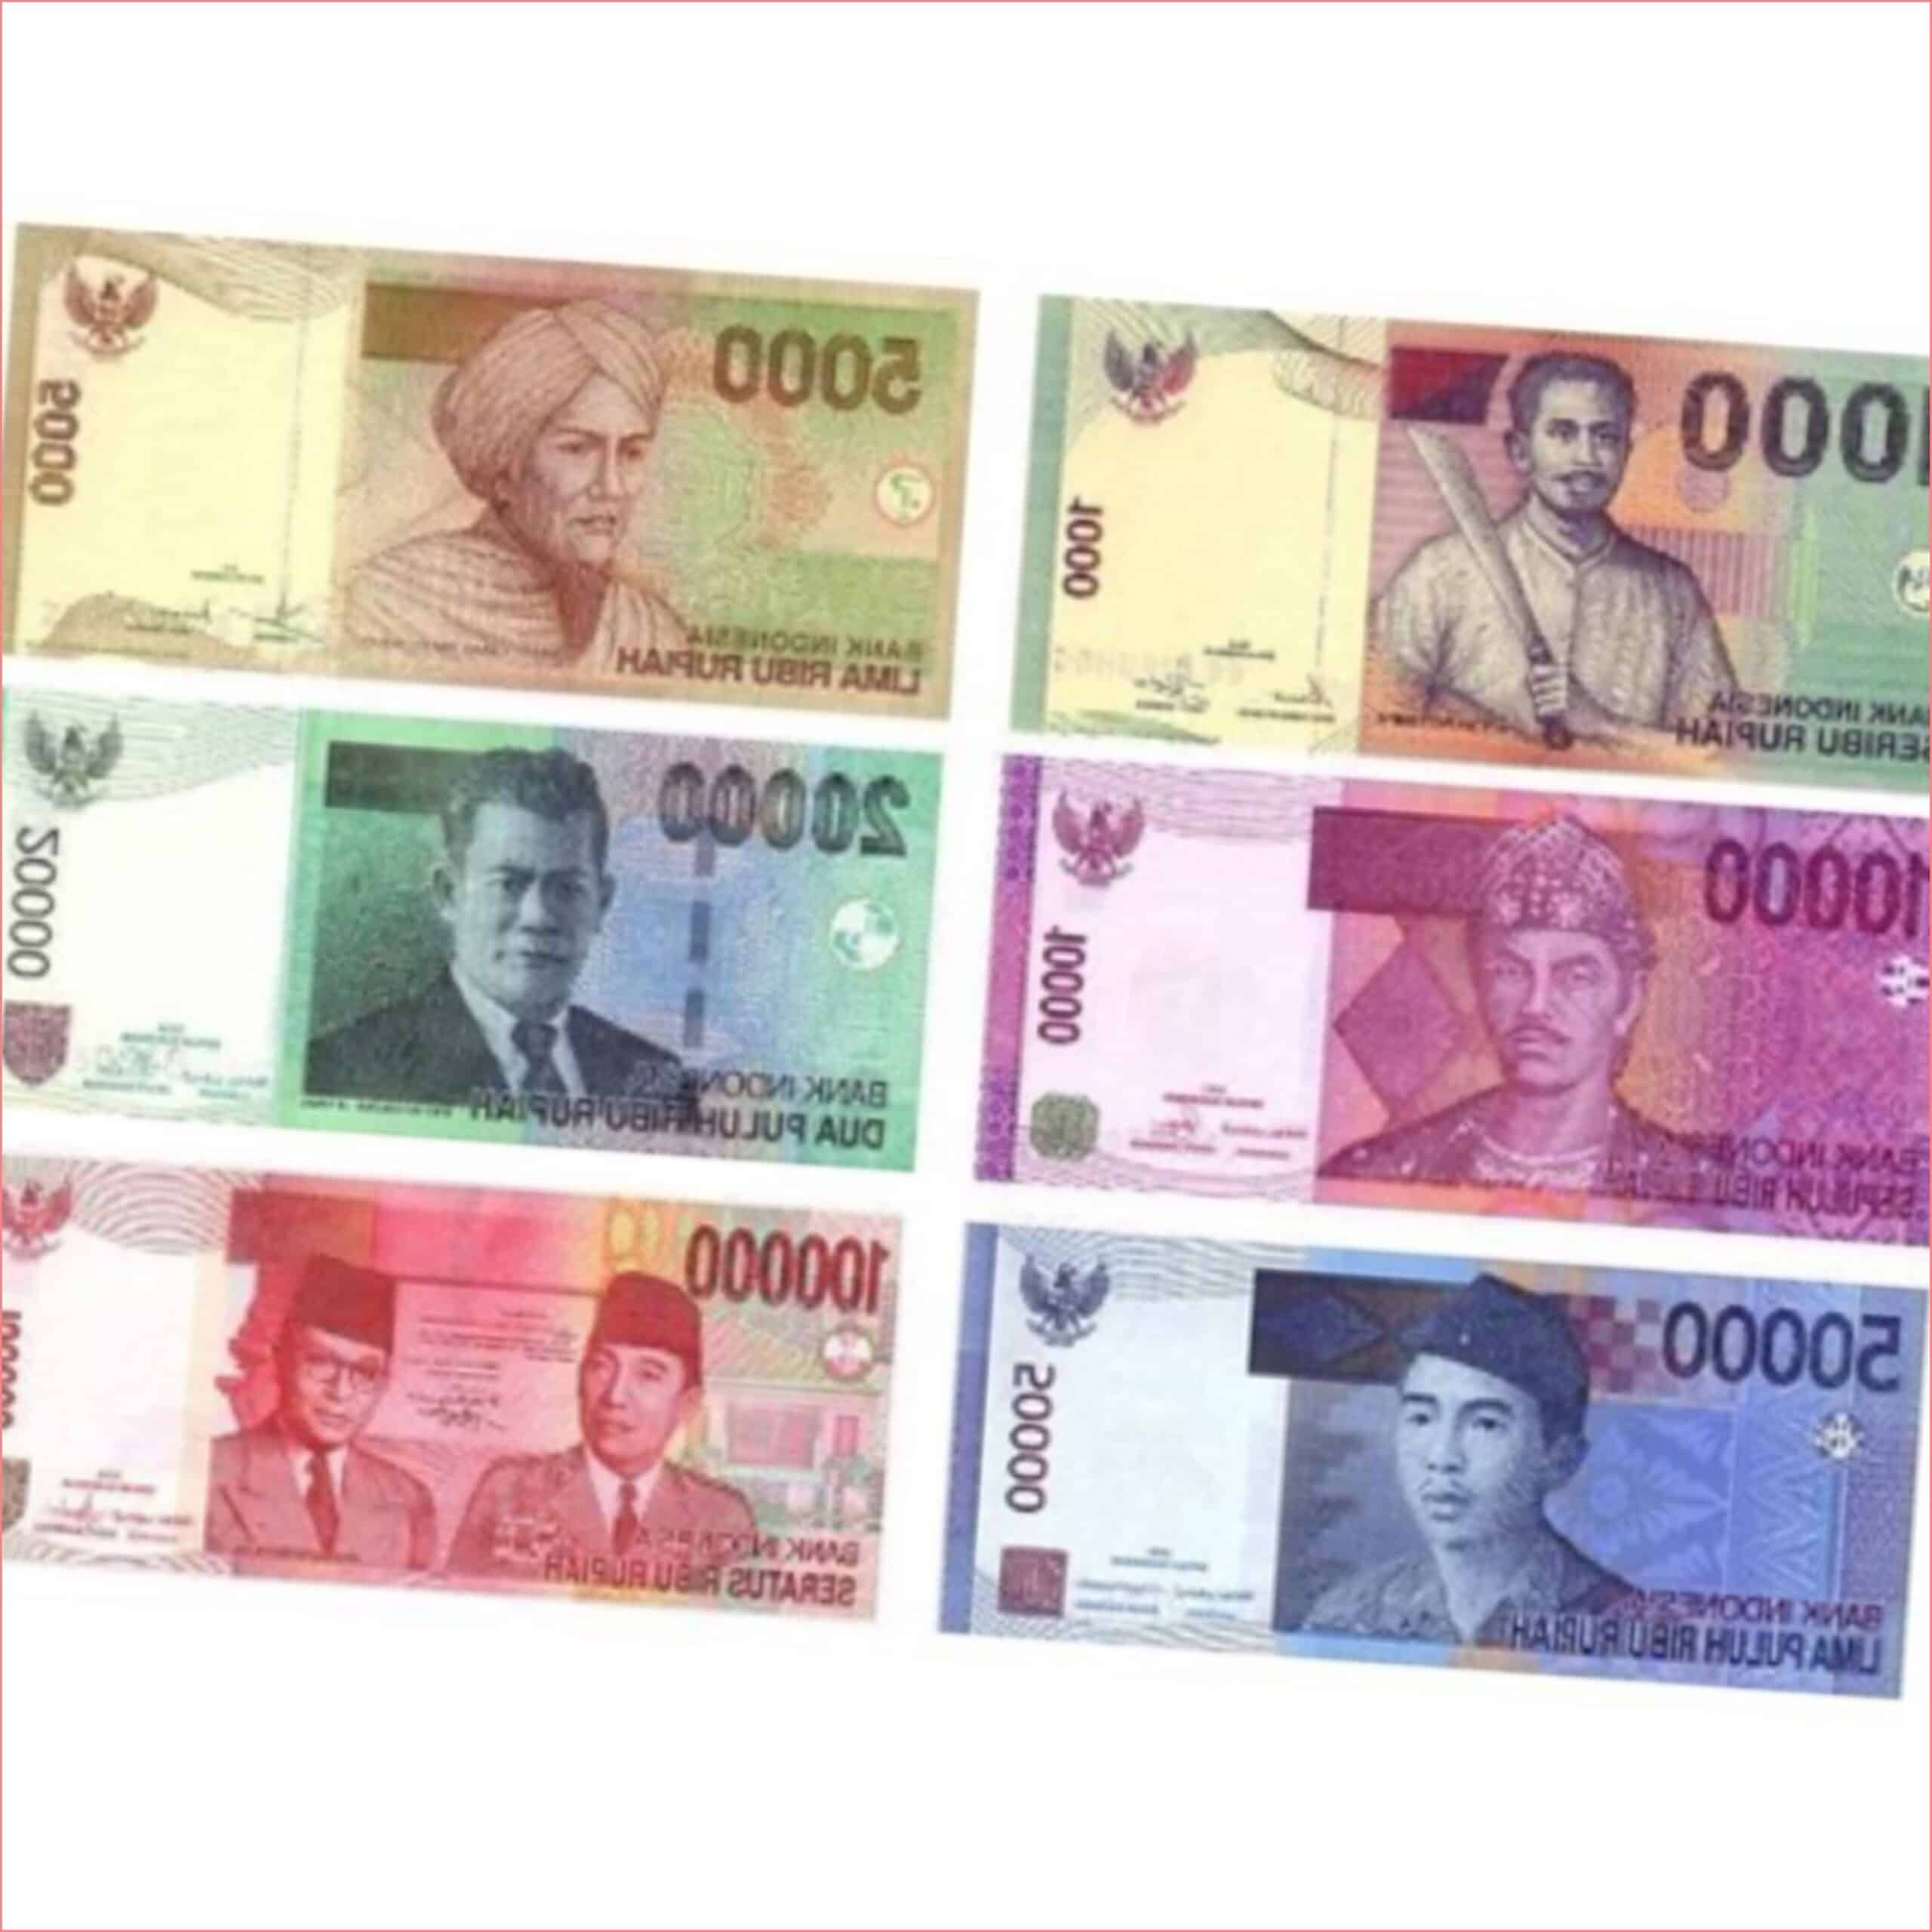 Индонезийская рупия валюта деньги с первого взгляда для туристов английском языке